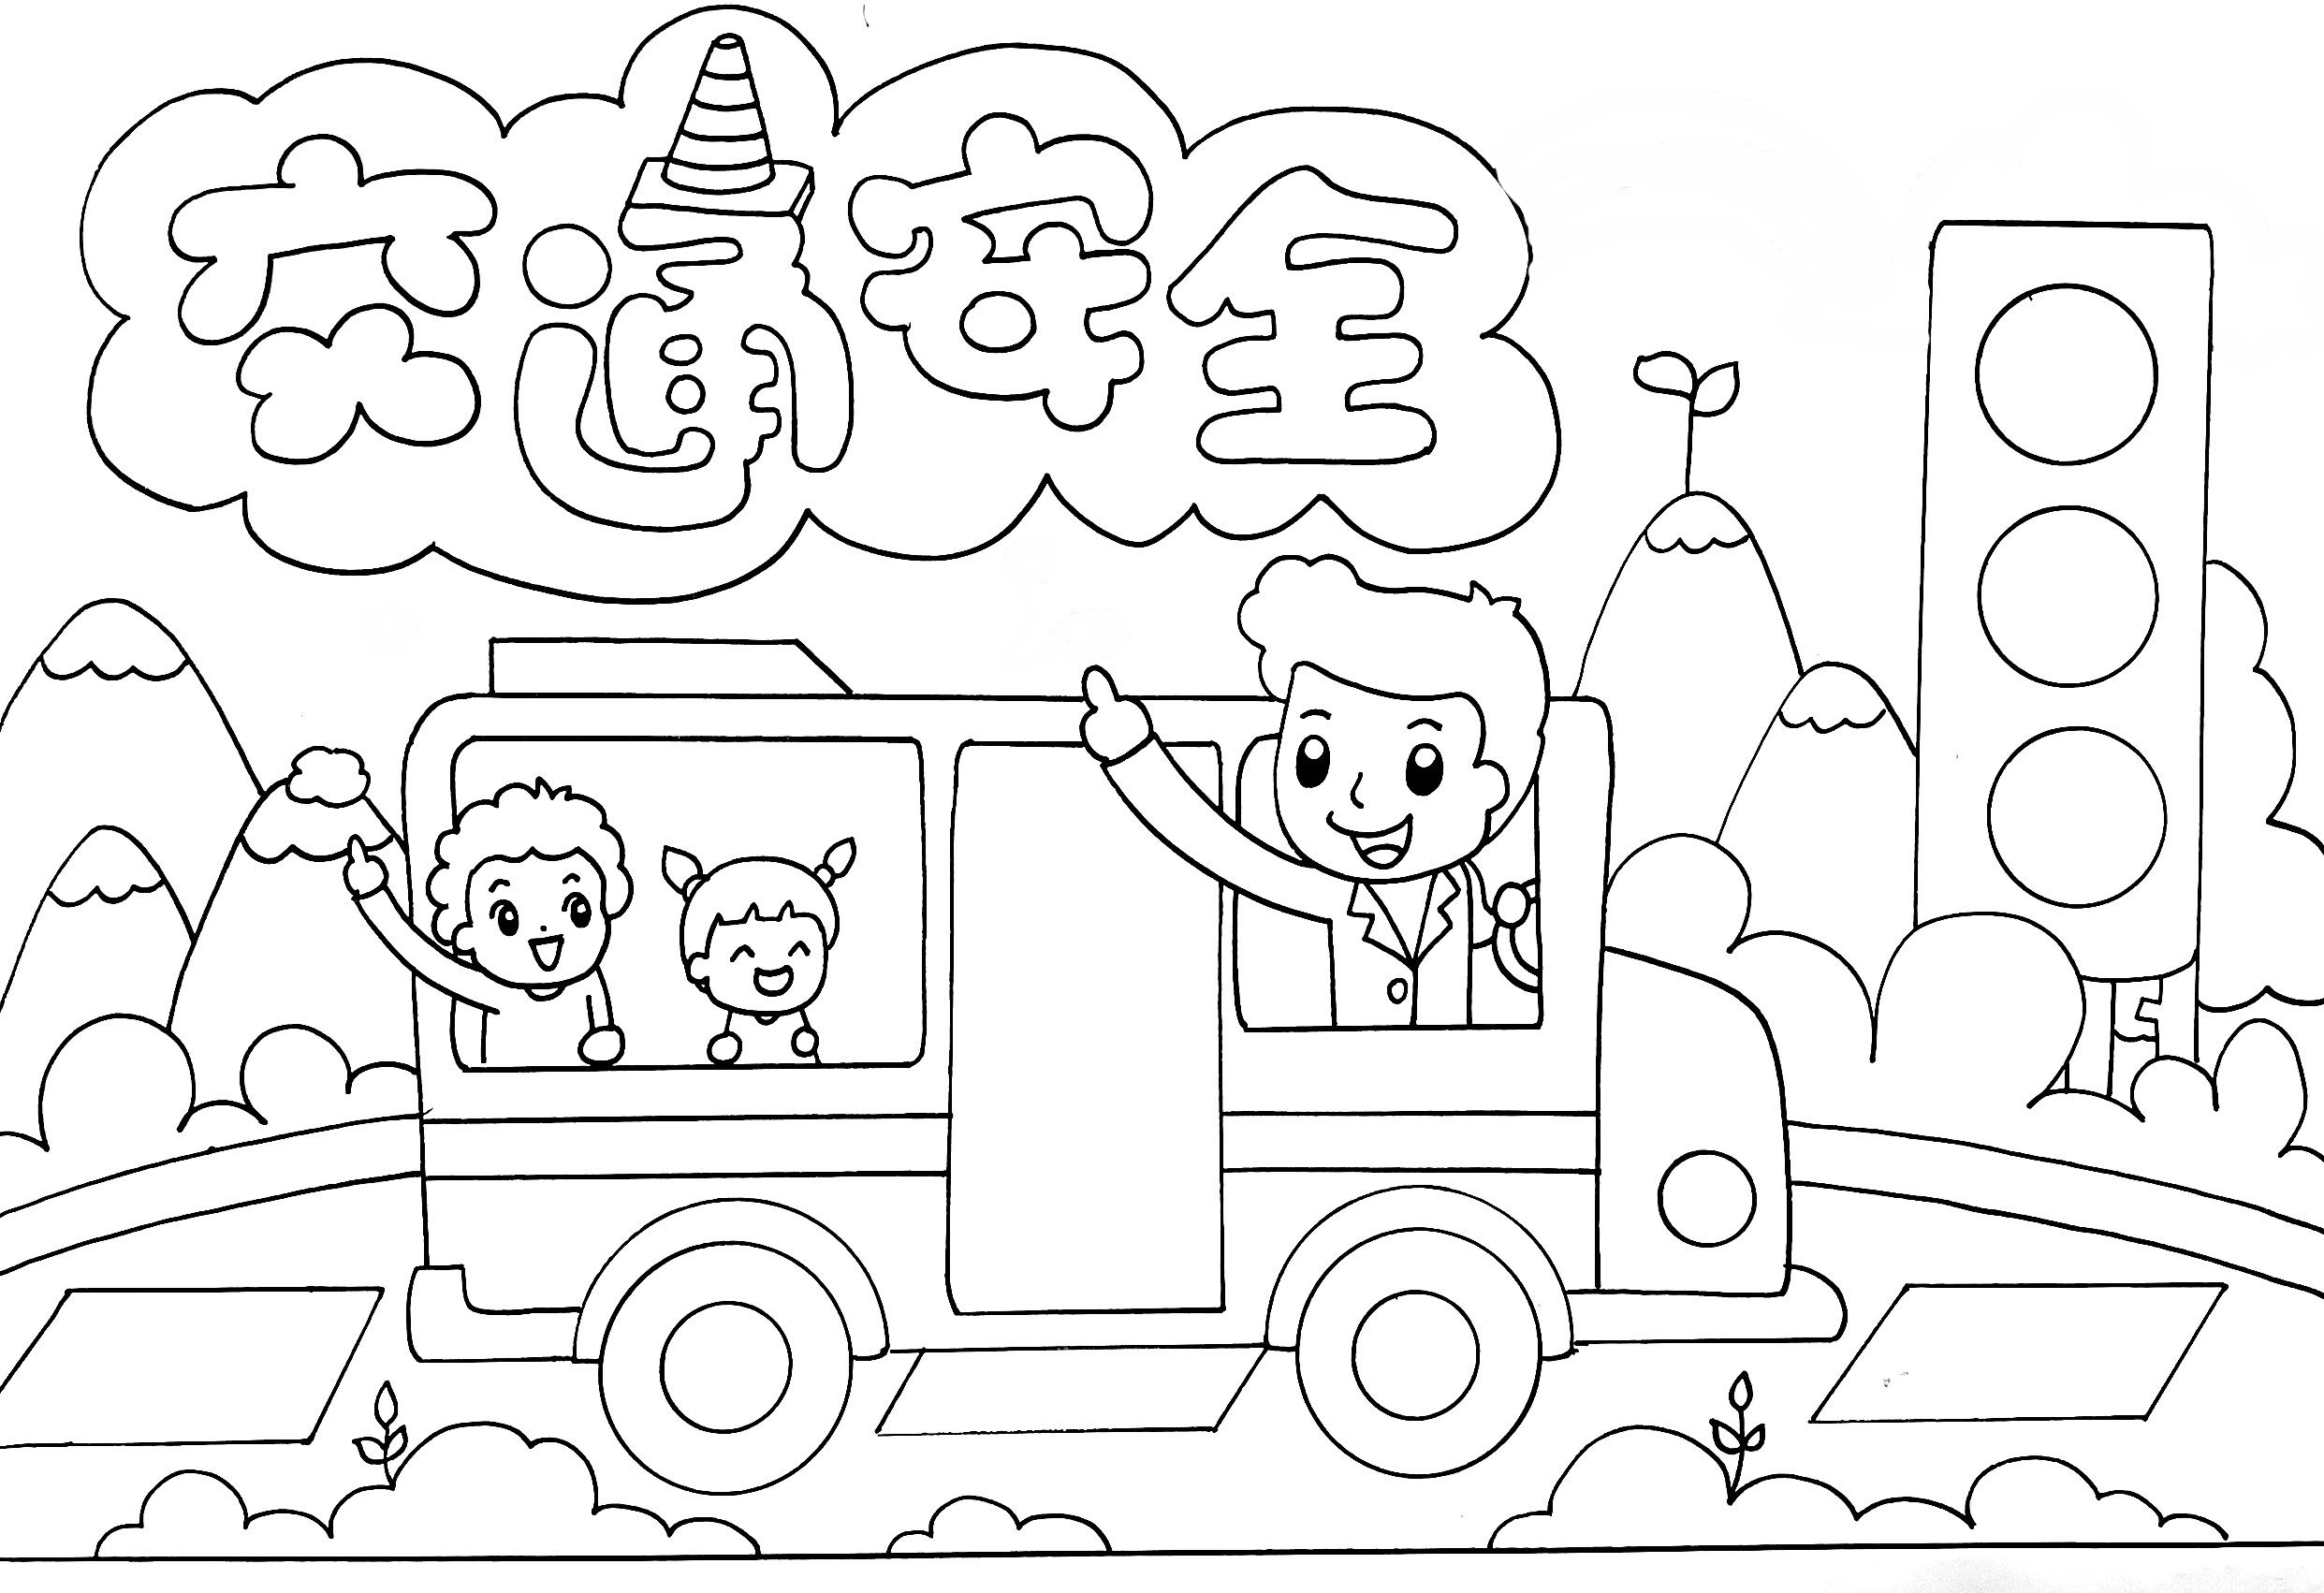 交通安全主题儿童画,关于全国交通安全日的创意儿童画